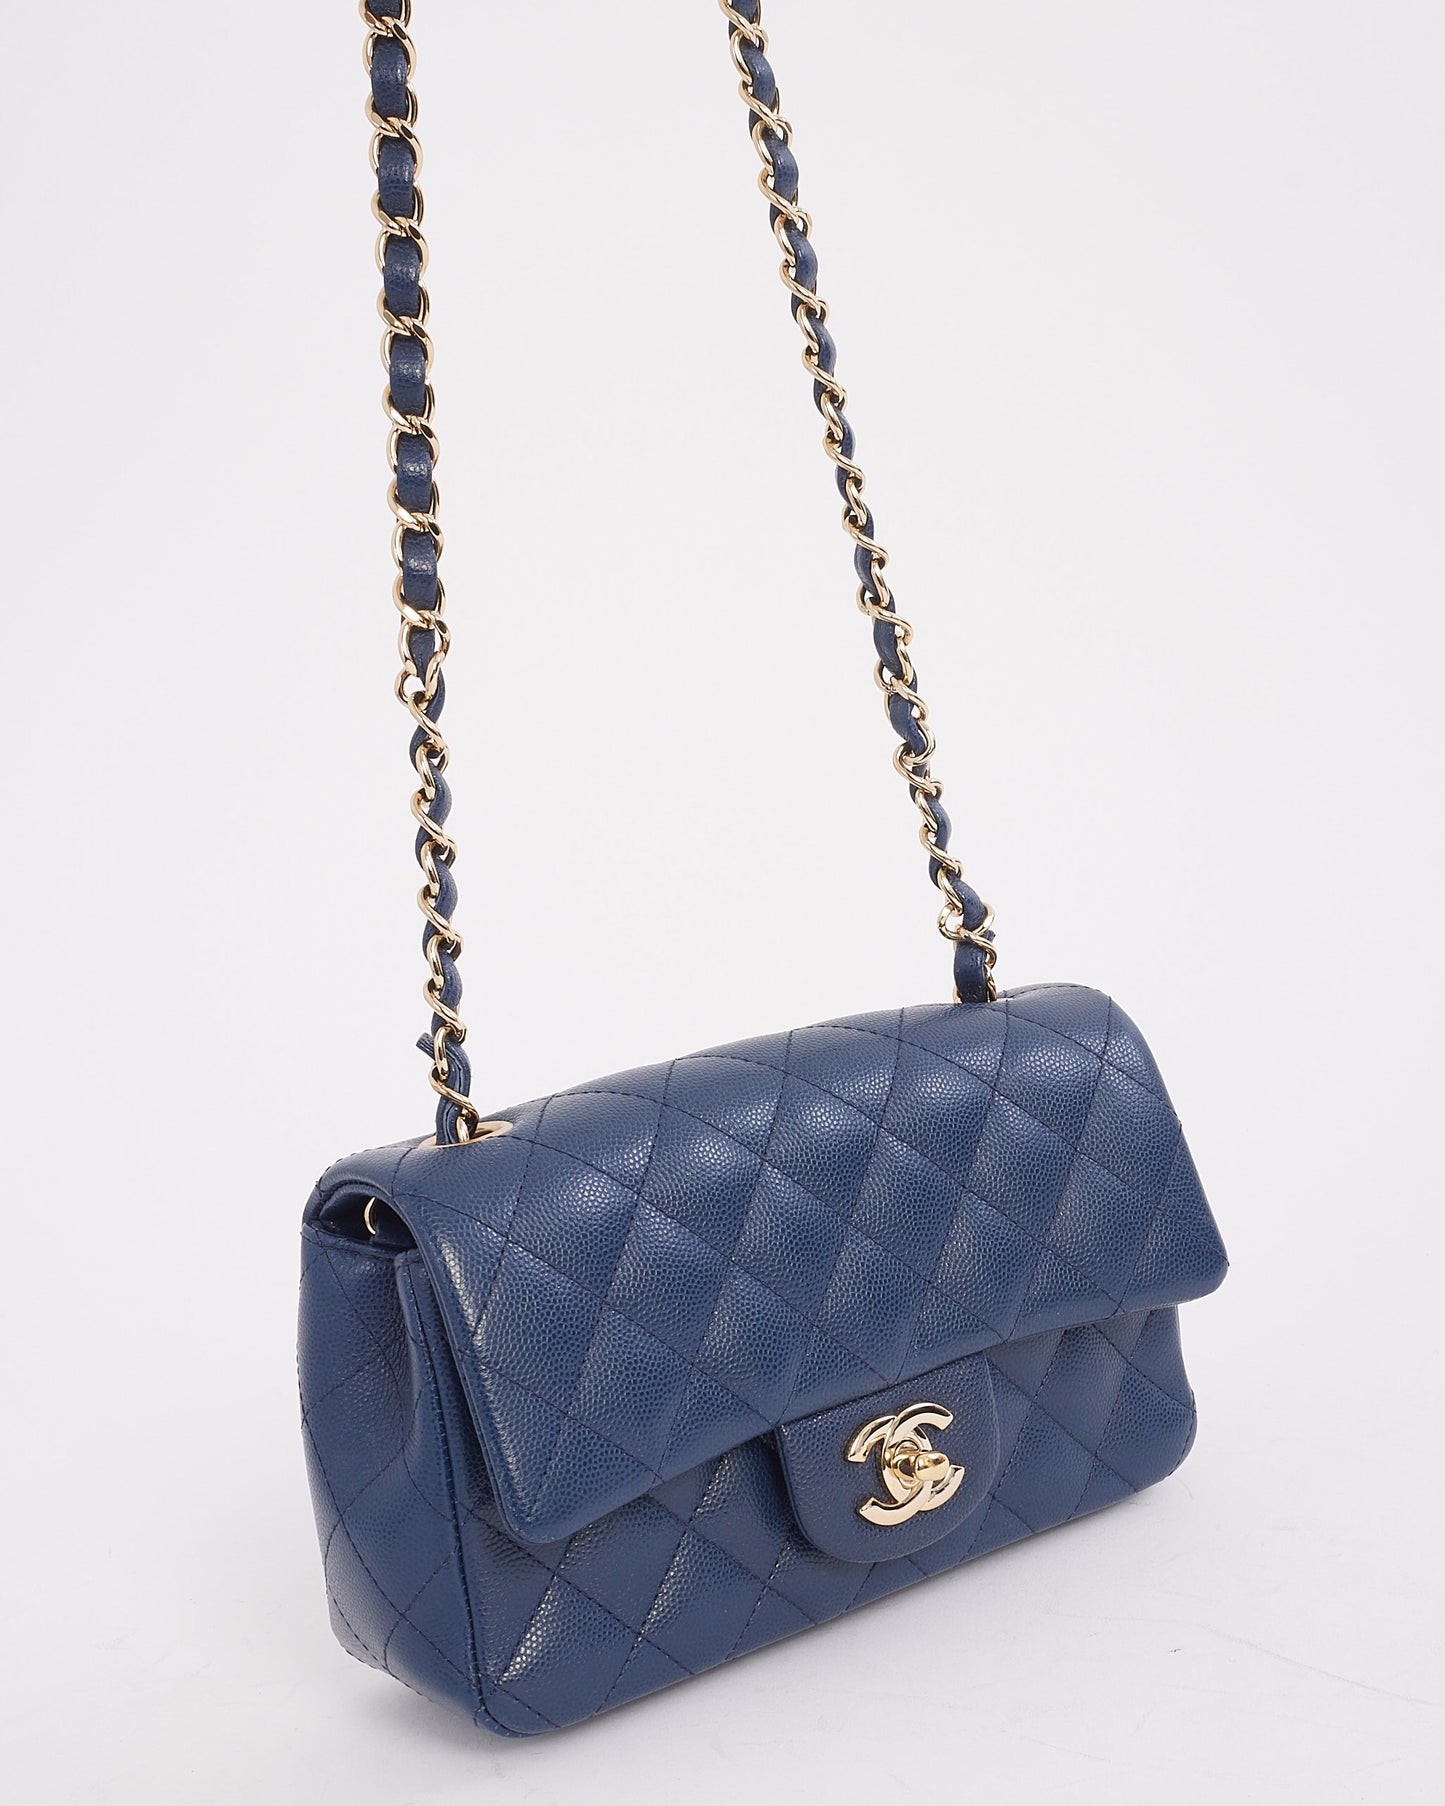 Mini sac à rabat rectangulaire classique en cuir caviar bleu marine Chanel